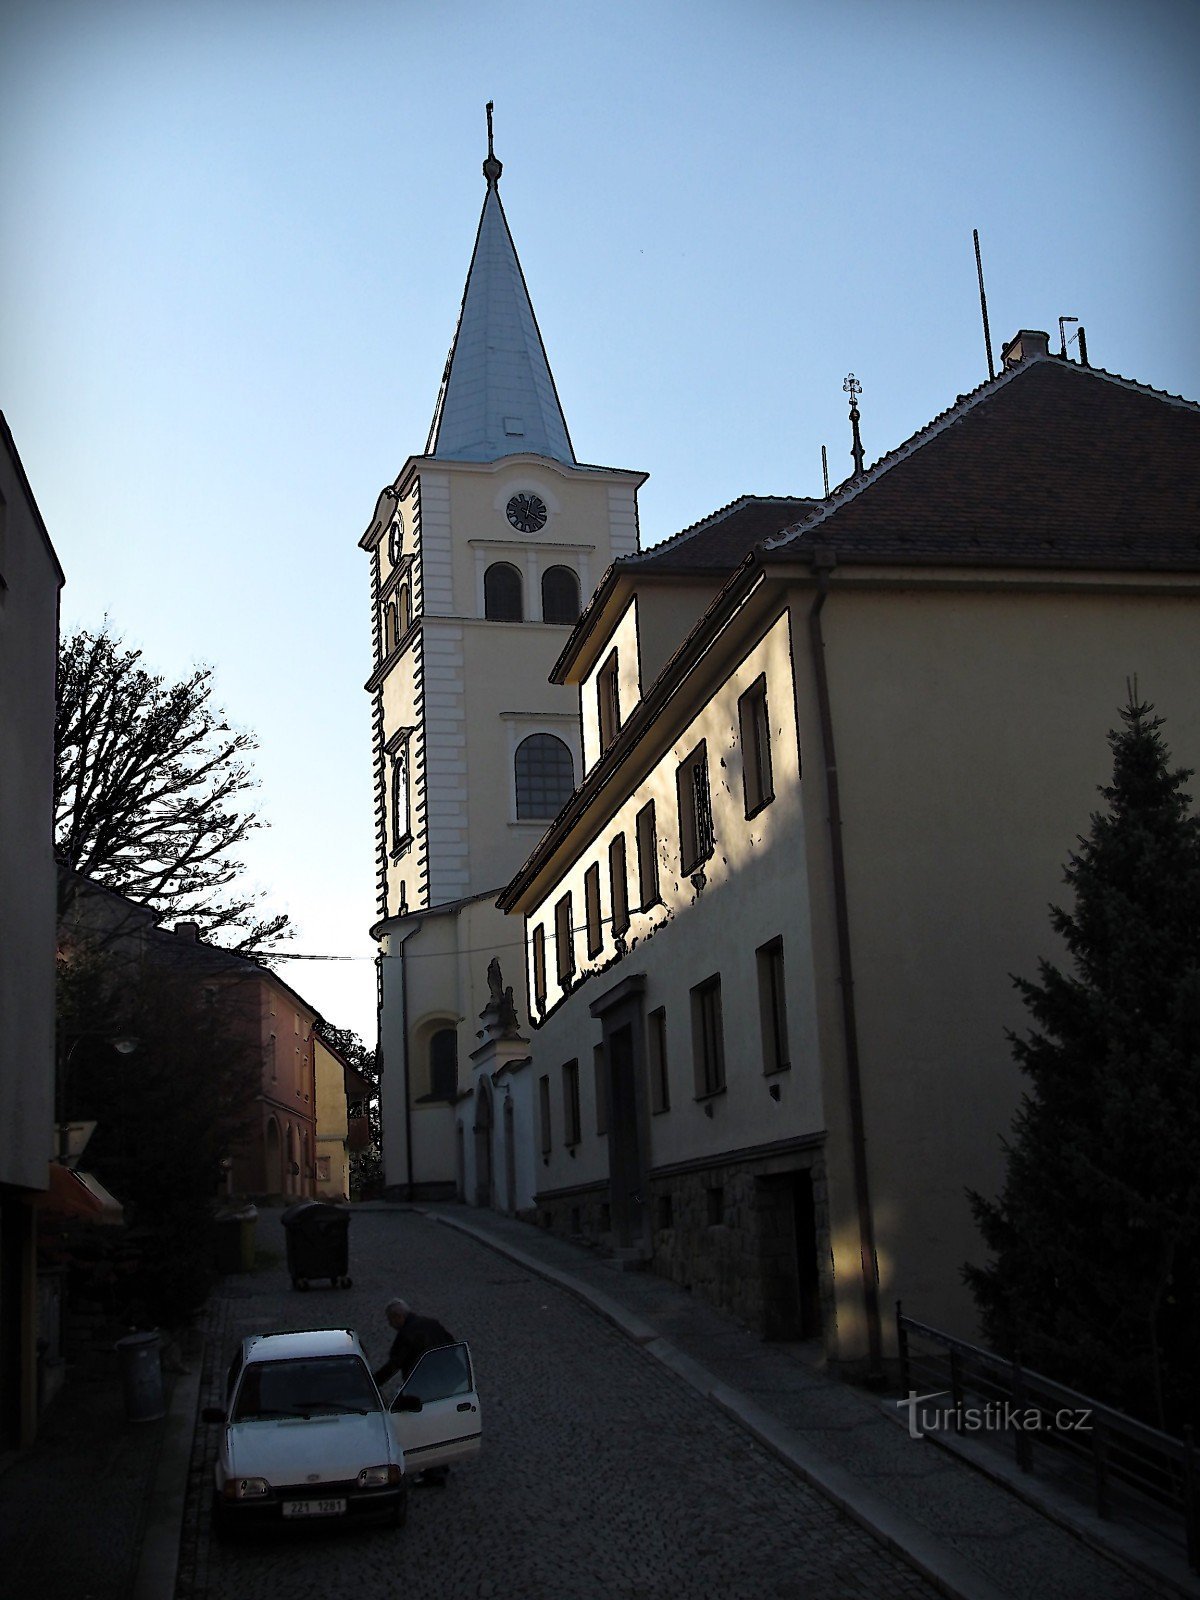 Valašské Meziříčí - Église de l'Assomption de la Vierge Marie